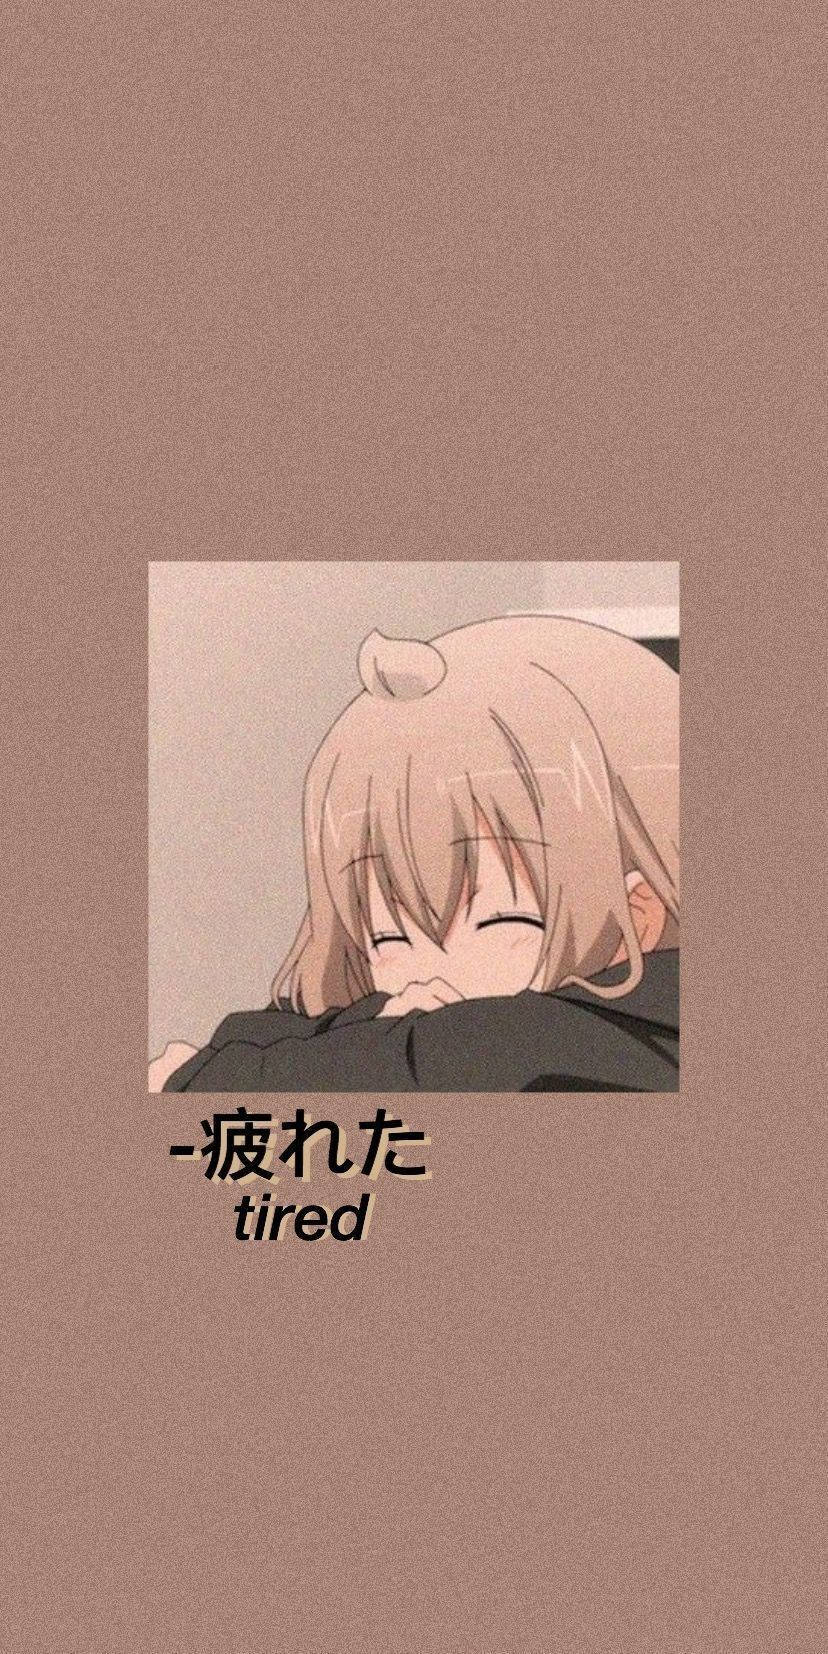 Træt Anime Pige Sovende På en Pude Wallpaper